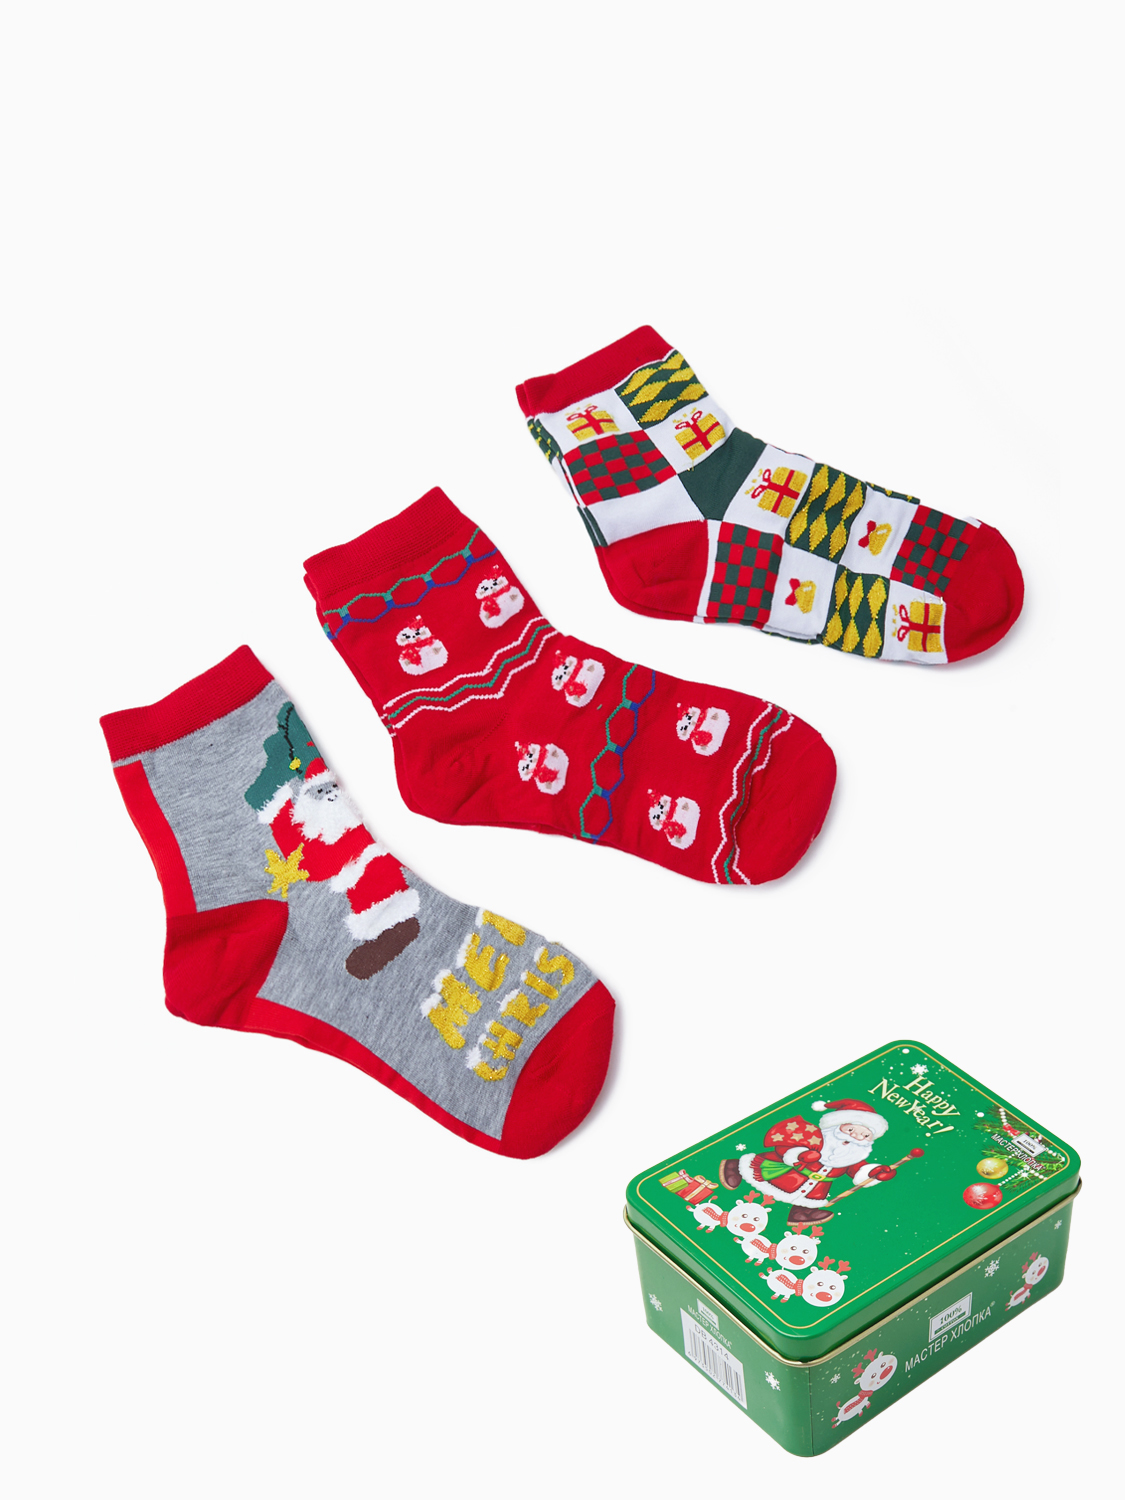 Комплект носков женских AMIGOBS INBOX66673 разноцветных 36-41, 3 пары